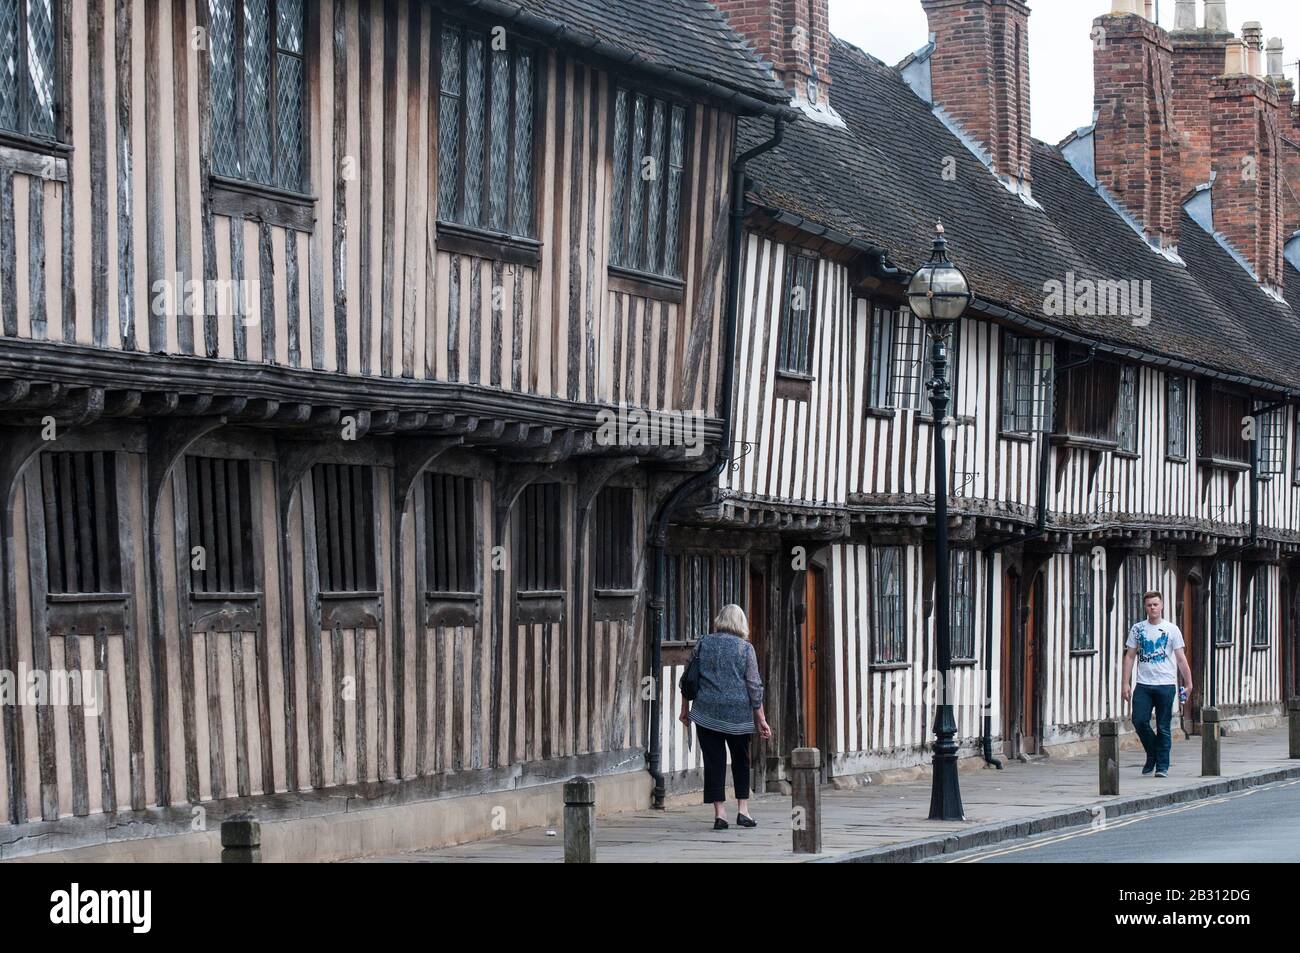 La scuola del re Edoardo VI e le serre del periodo Tudor a Stratford-upon-Avon, Inghilterra Foto Stock